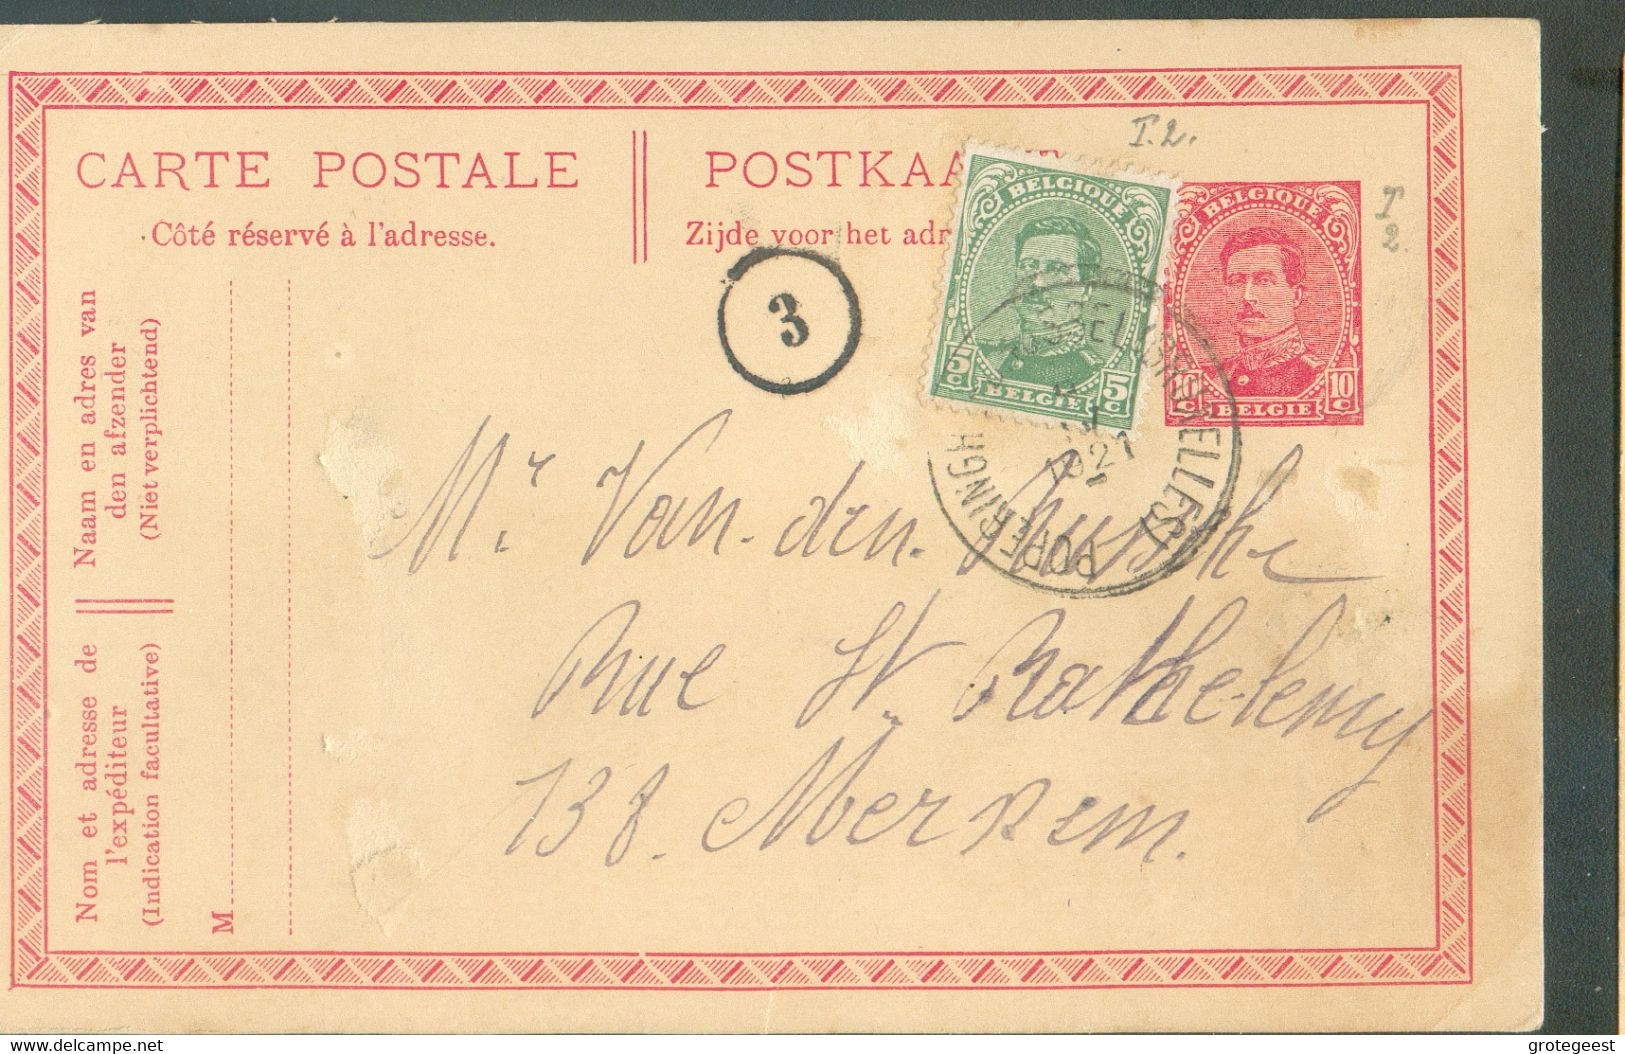 AMBULANT N°137 En Complément Sur E.P. Carte 10 Centimes Em. 1915, Obl; Sc AMBULANT POPERINGHE-BRUSSEL (BRUXELLES) du 9-I - Ambulanti